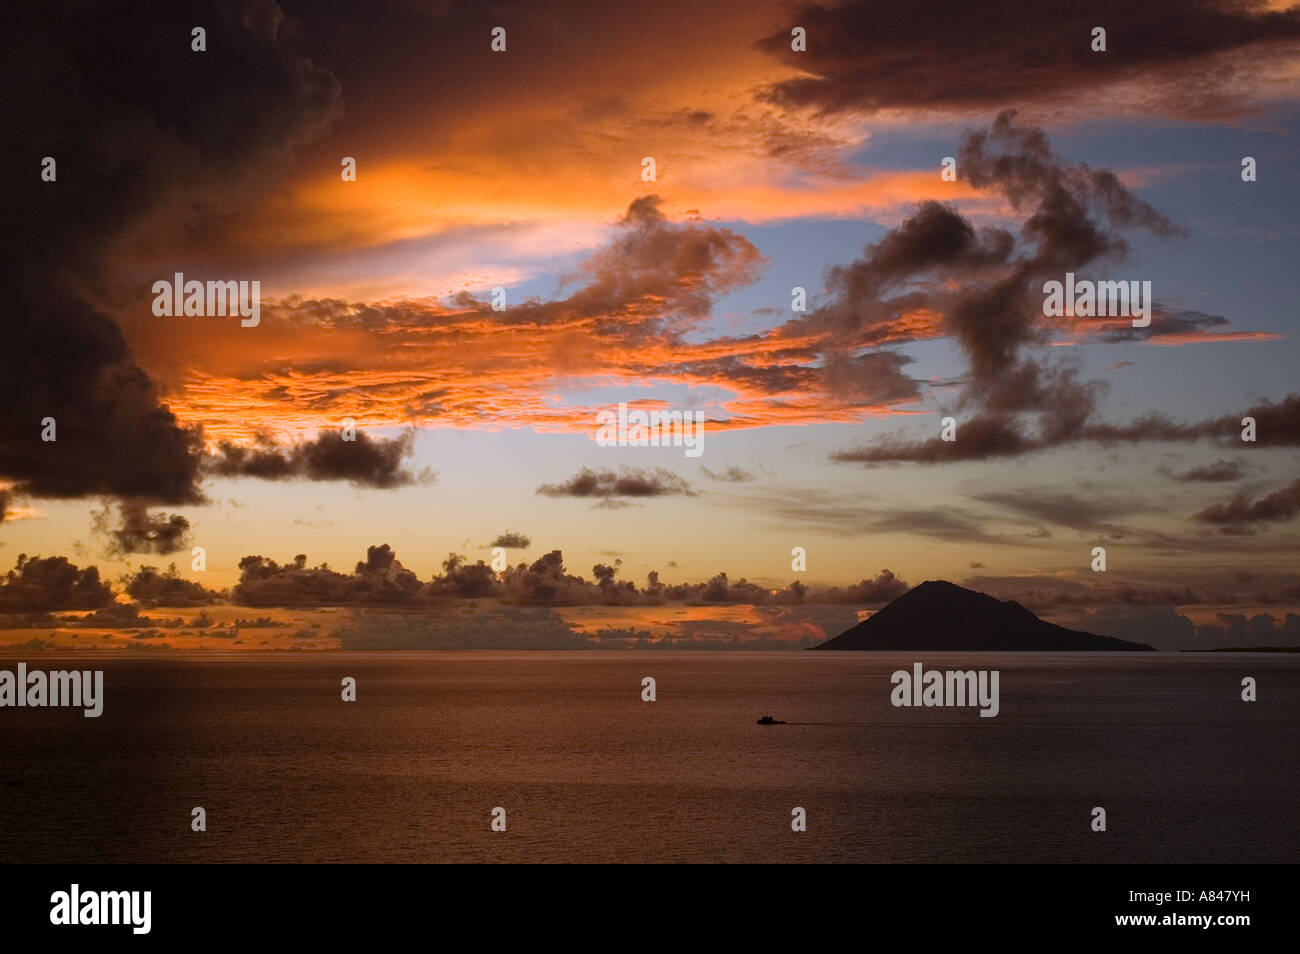 Sunset colors over Manado Tua, North Sulawesi Indonesia. Stock Photo